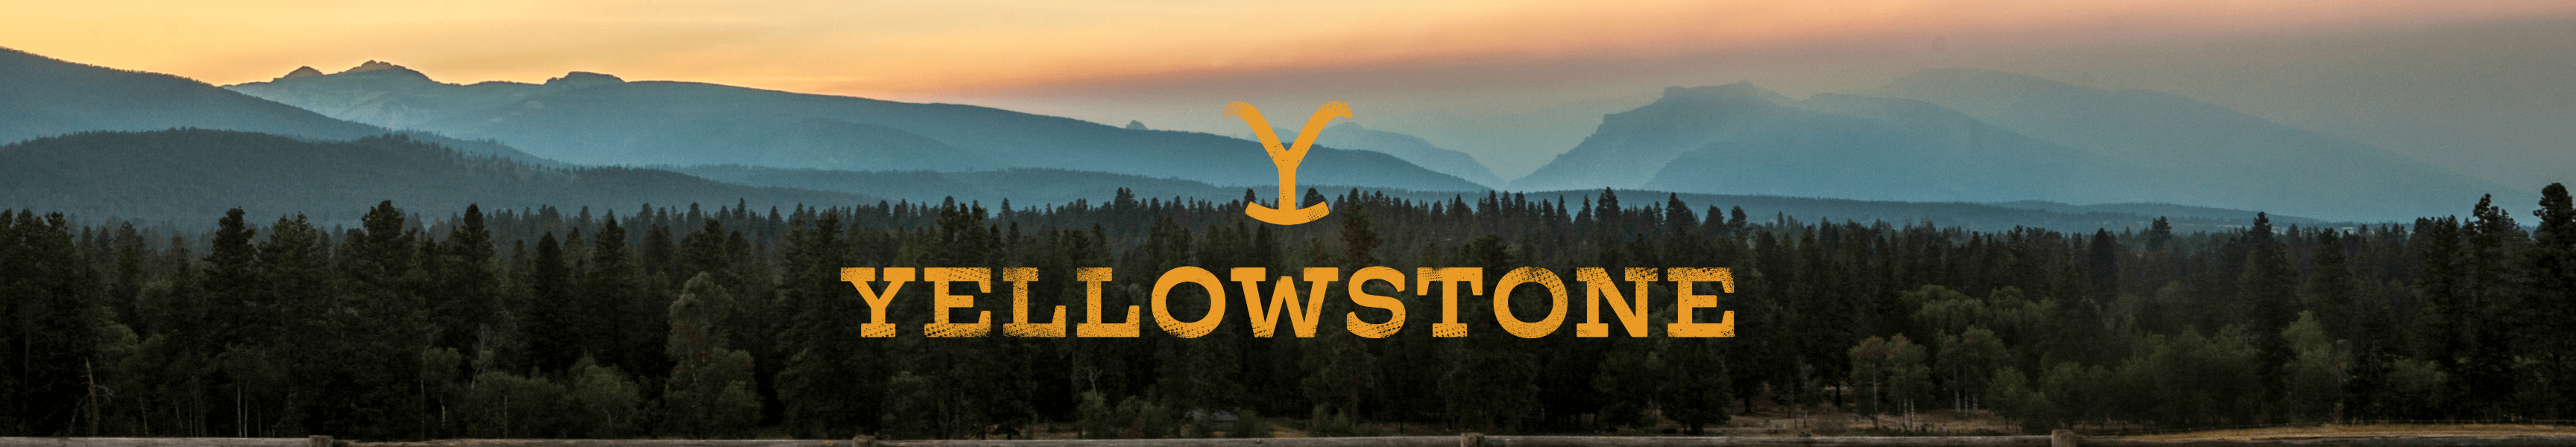 Yellowstone Oberbekleidung